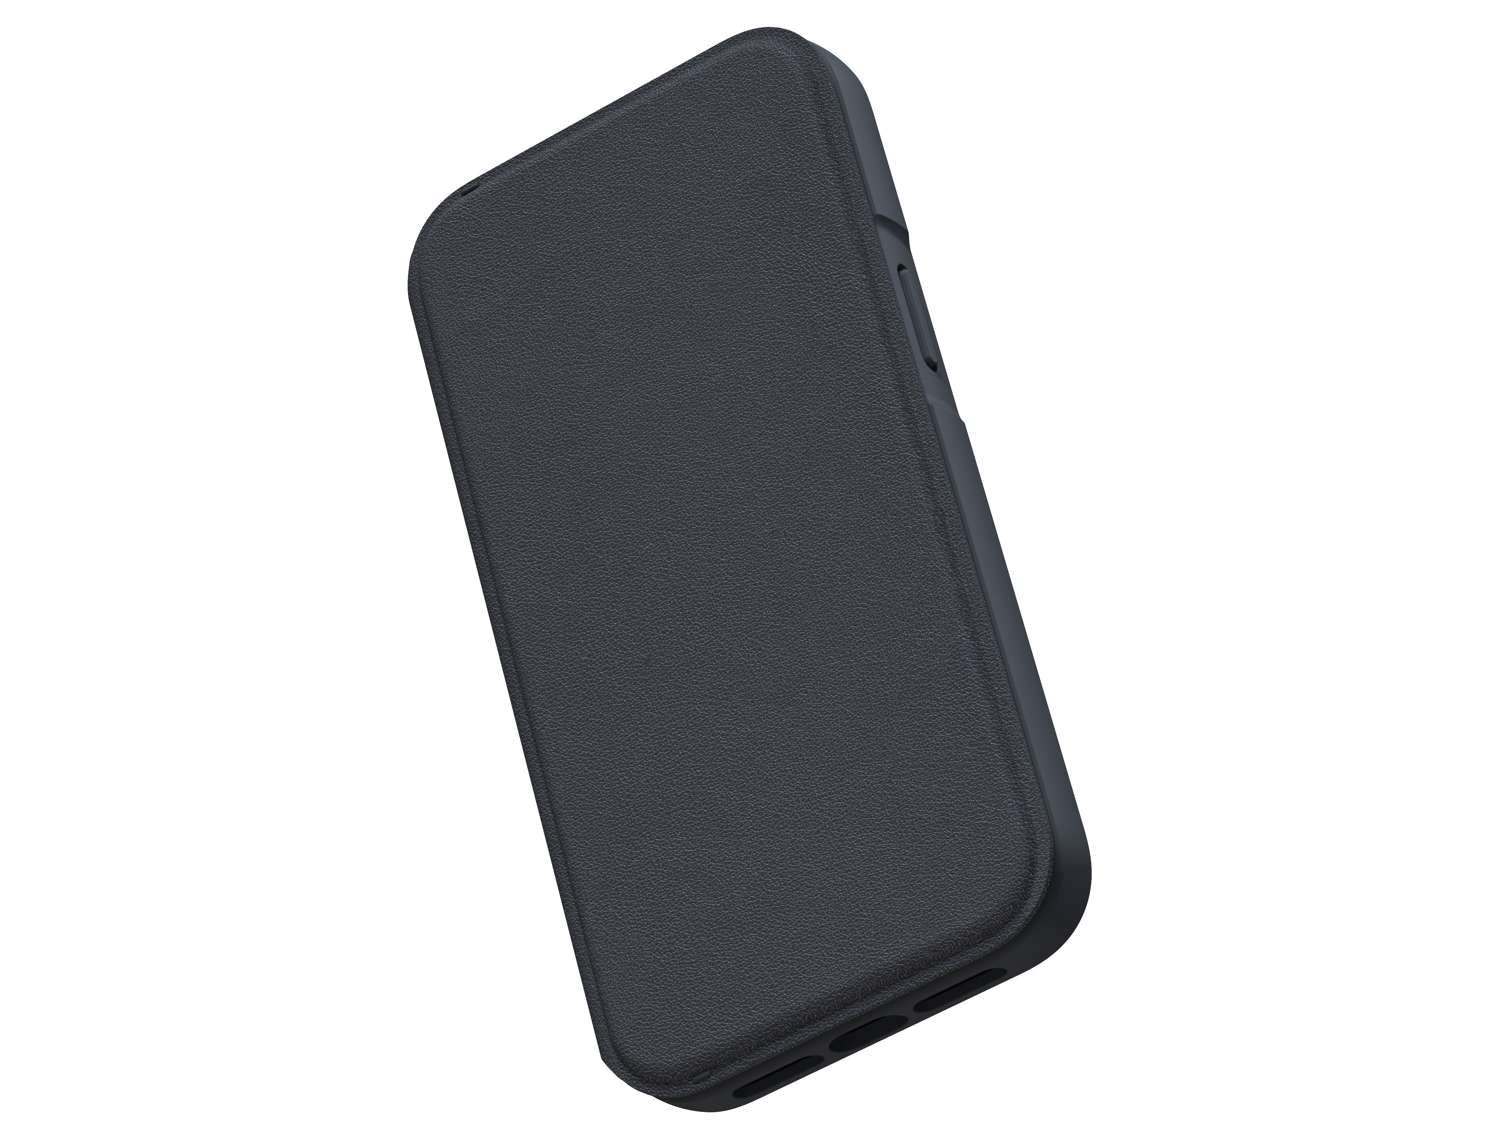 Genuine Leather MagSafe Wallet Case - Black